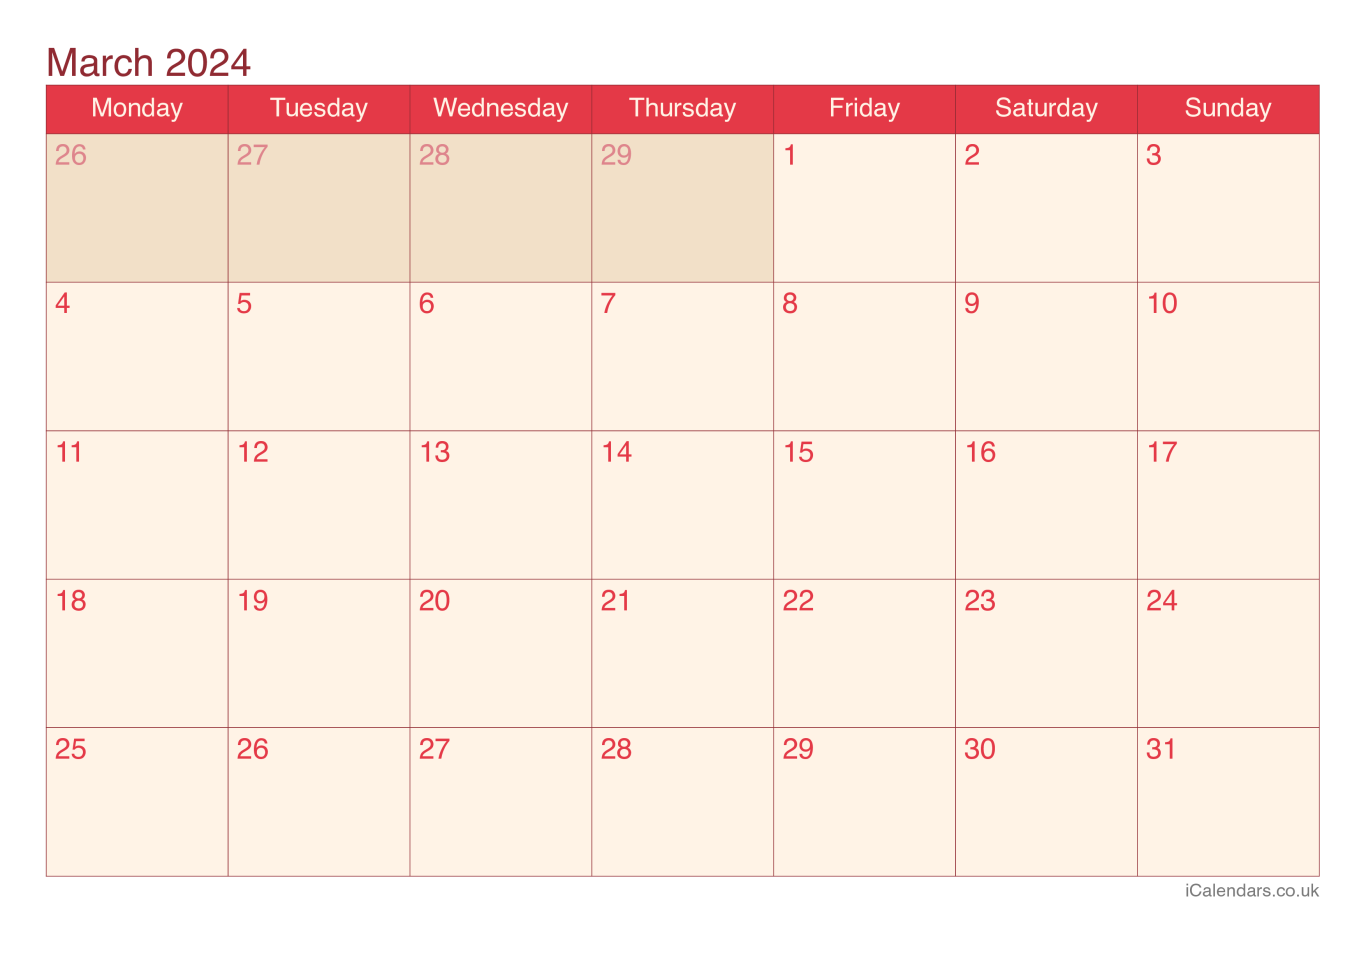 Calendar March 2024 - Cherry